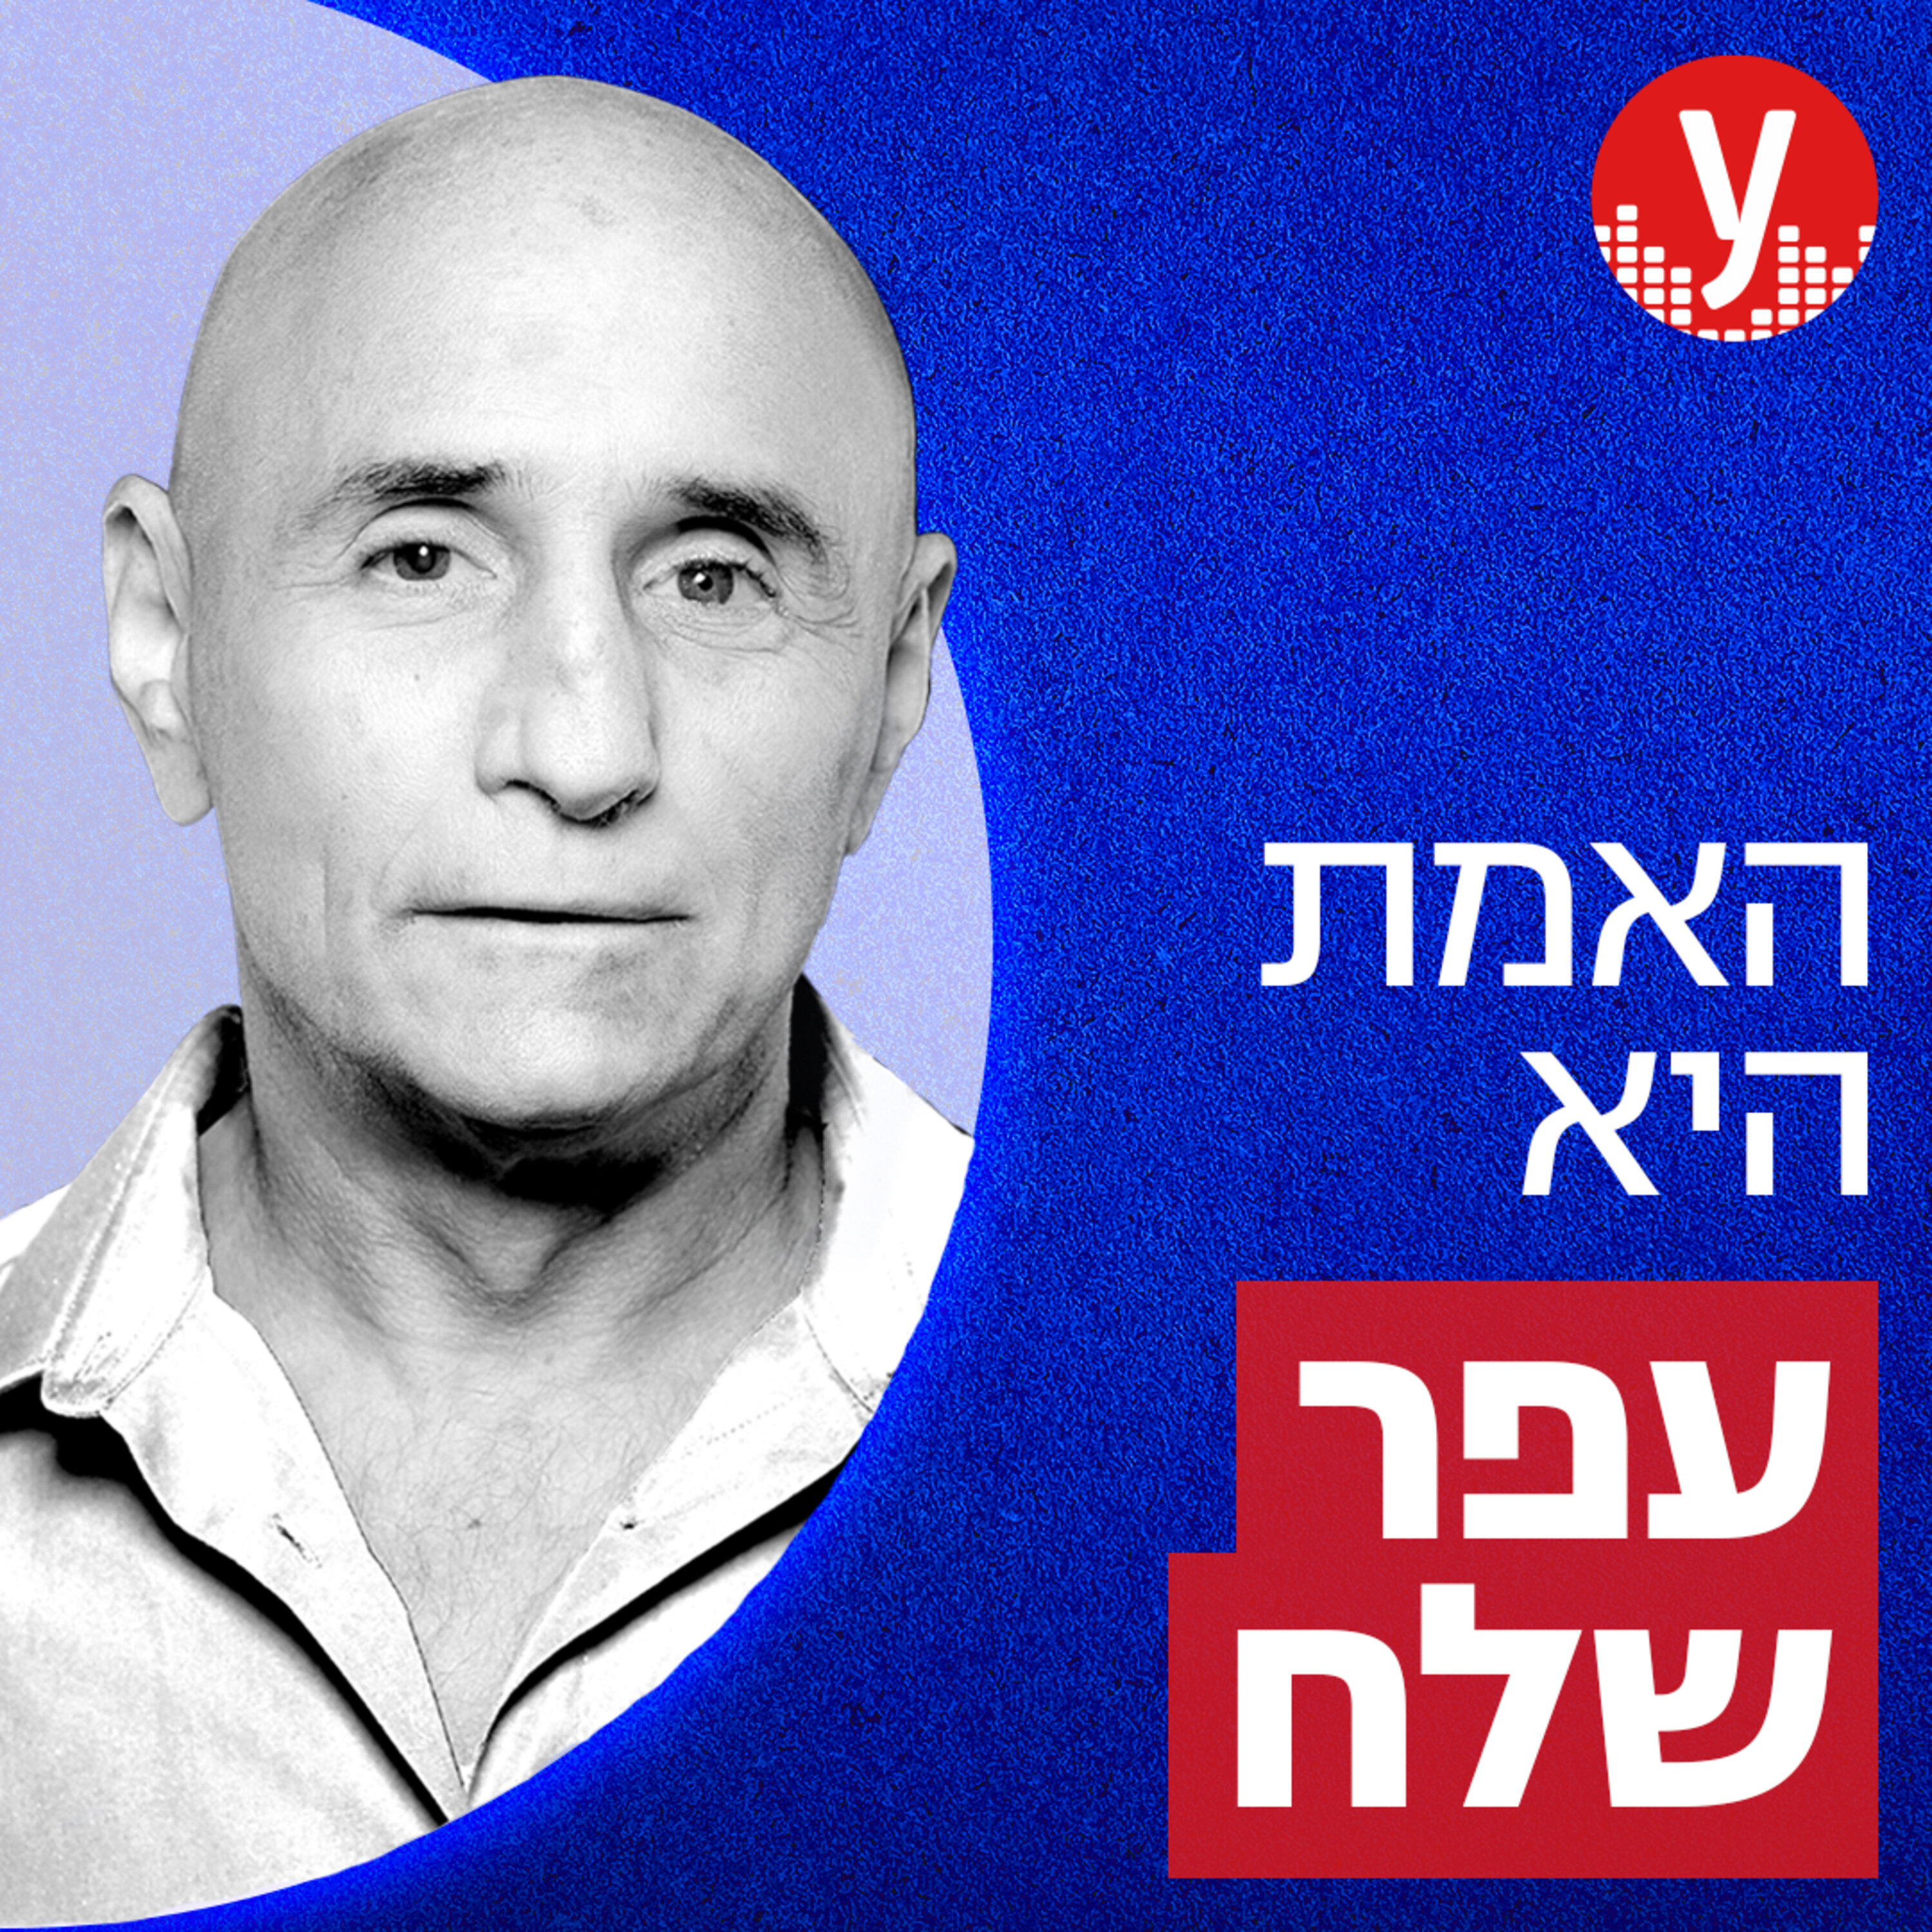 פרופ' שלמה זנד: אפשר להיות גם ישראלי וגם יהודי? | #85